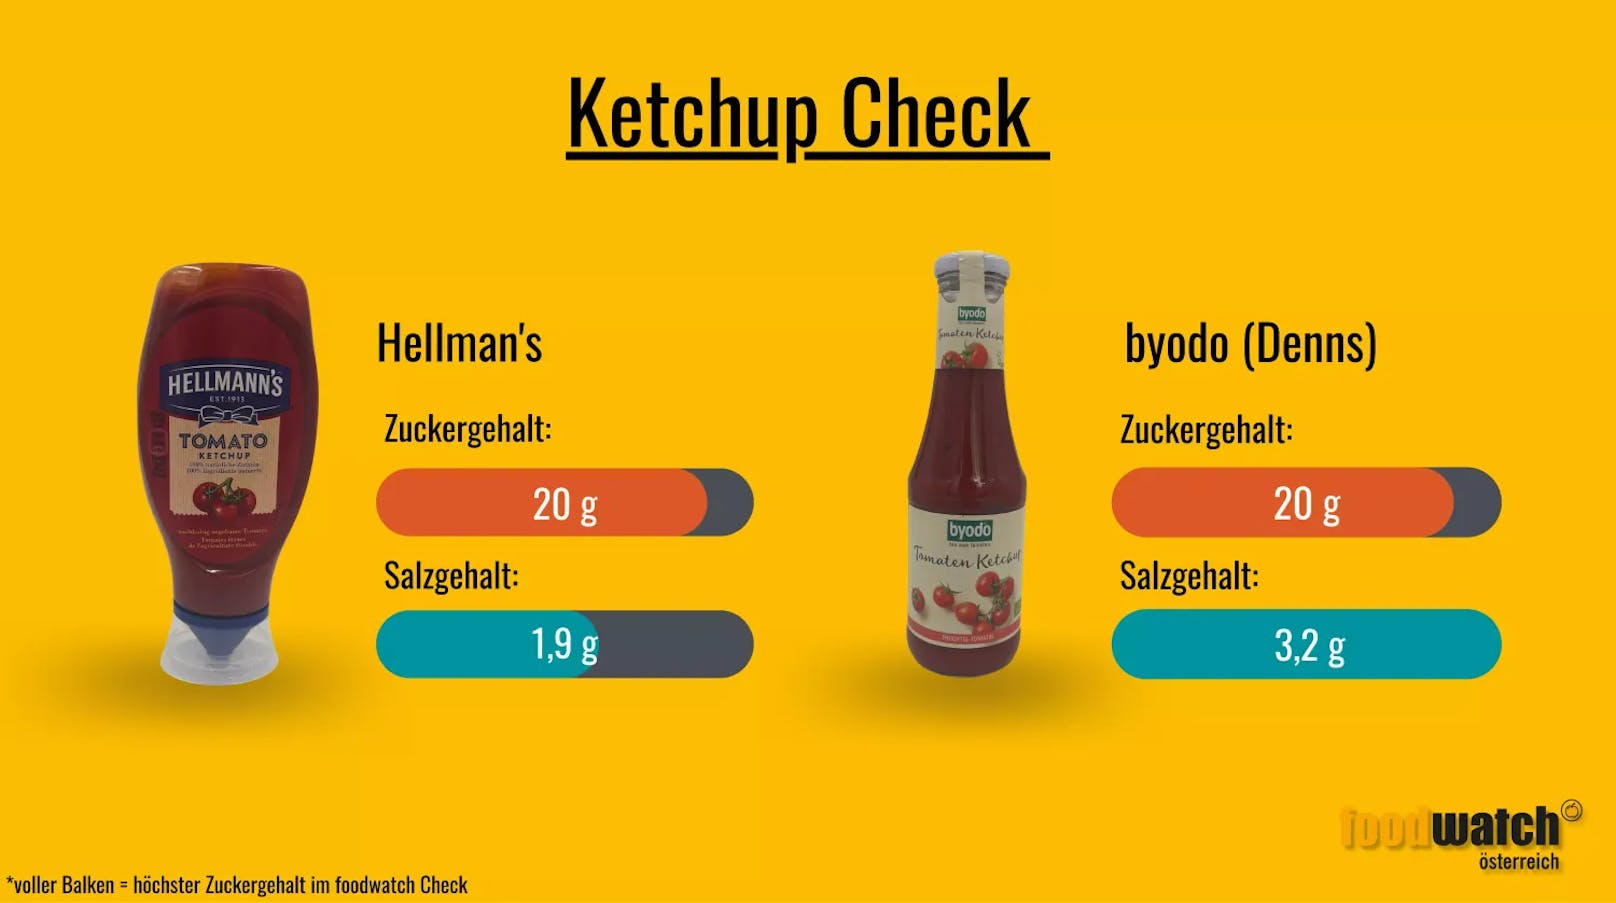 Beim Salzgehalt führt das Bio-Ketchup von Byodo die Spitze an.